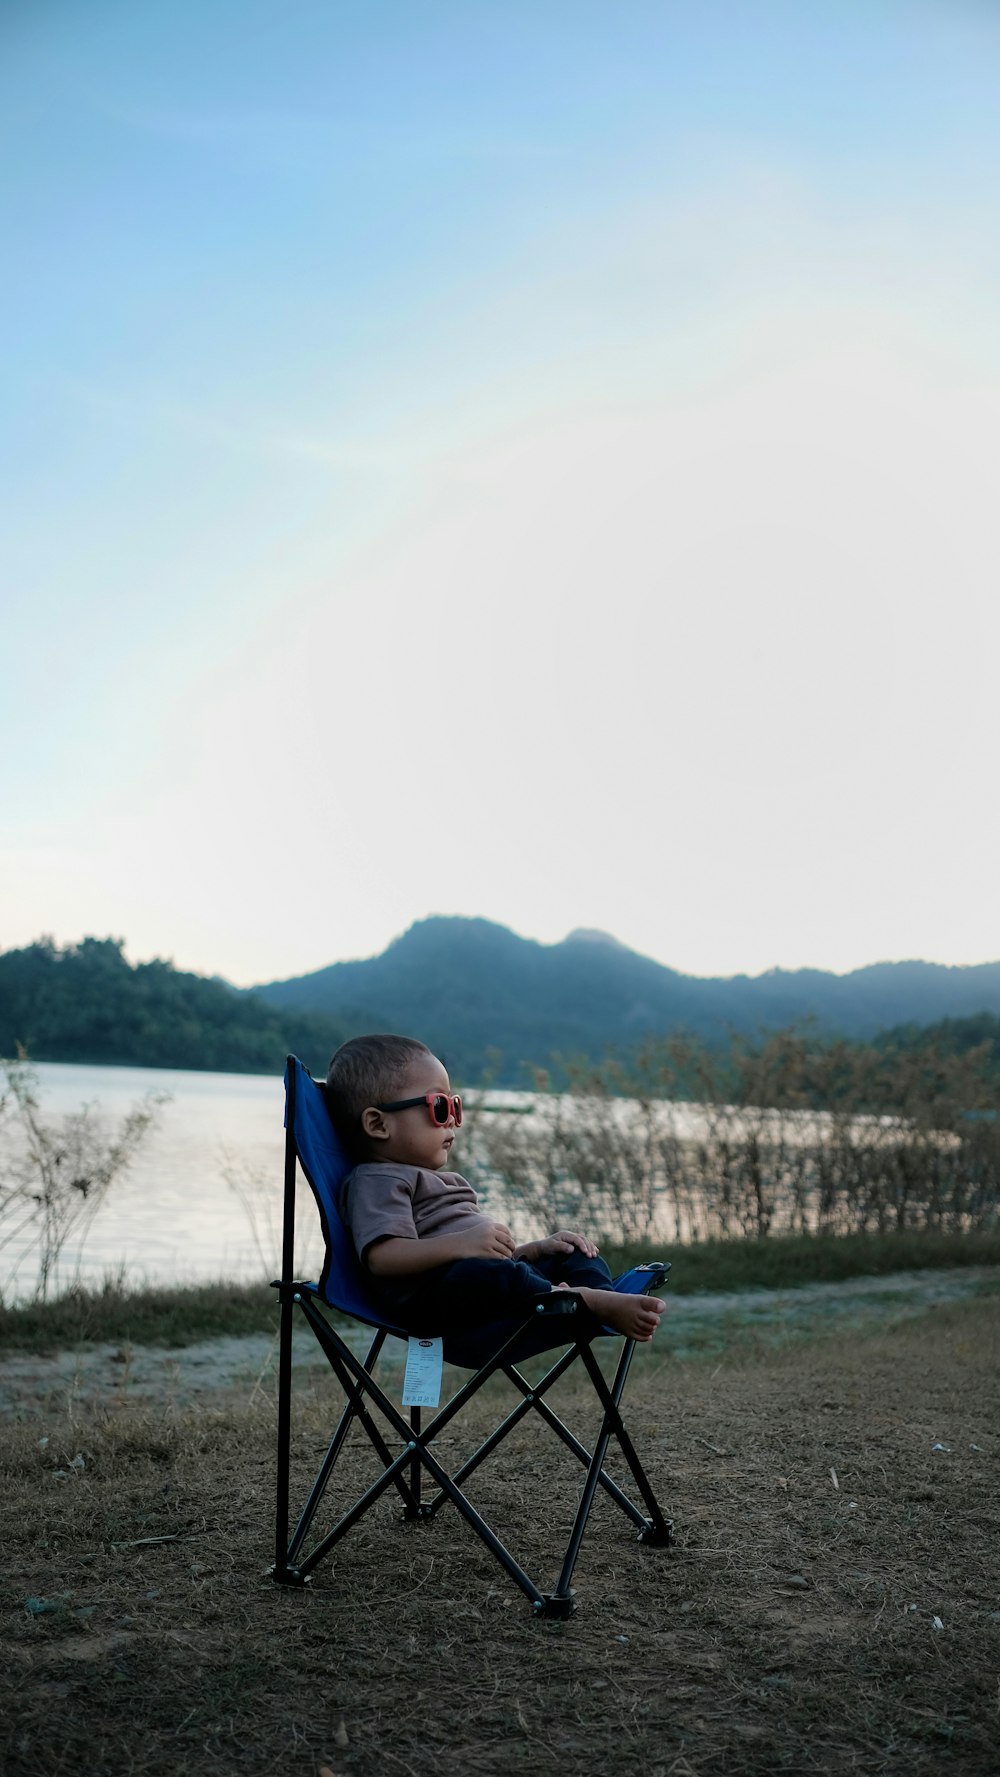 黒と青のキャンプチェアに座っている幼児